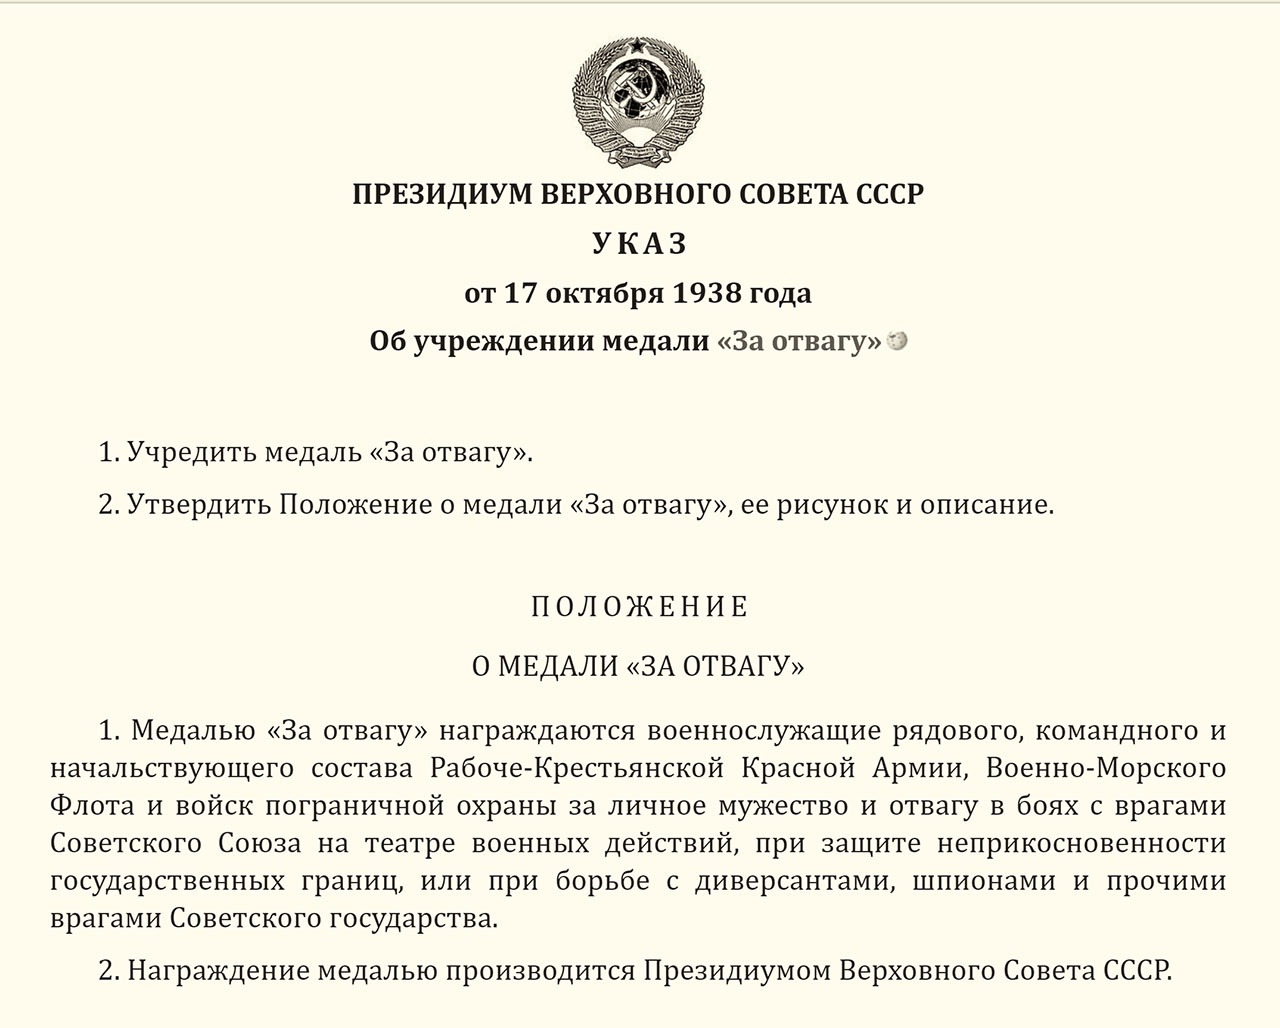 Медаль «За отвагу» была учреждена Указом Президиума Верховного Совета СССР от 17 октября 1938 года.